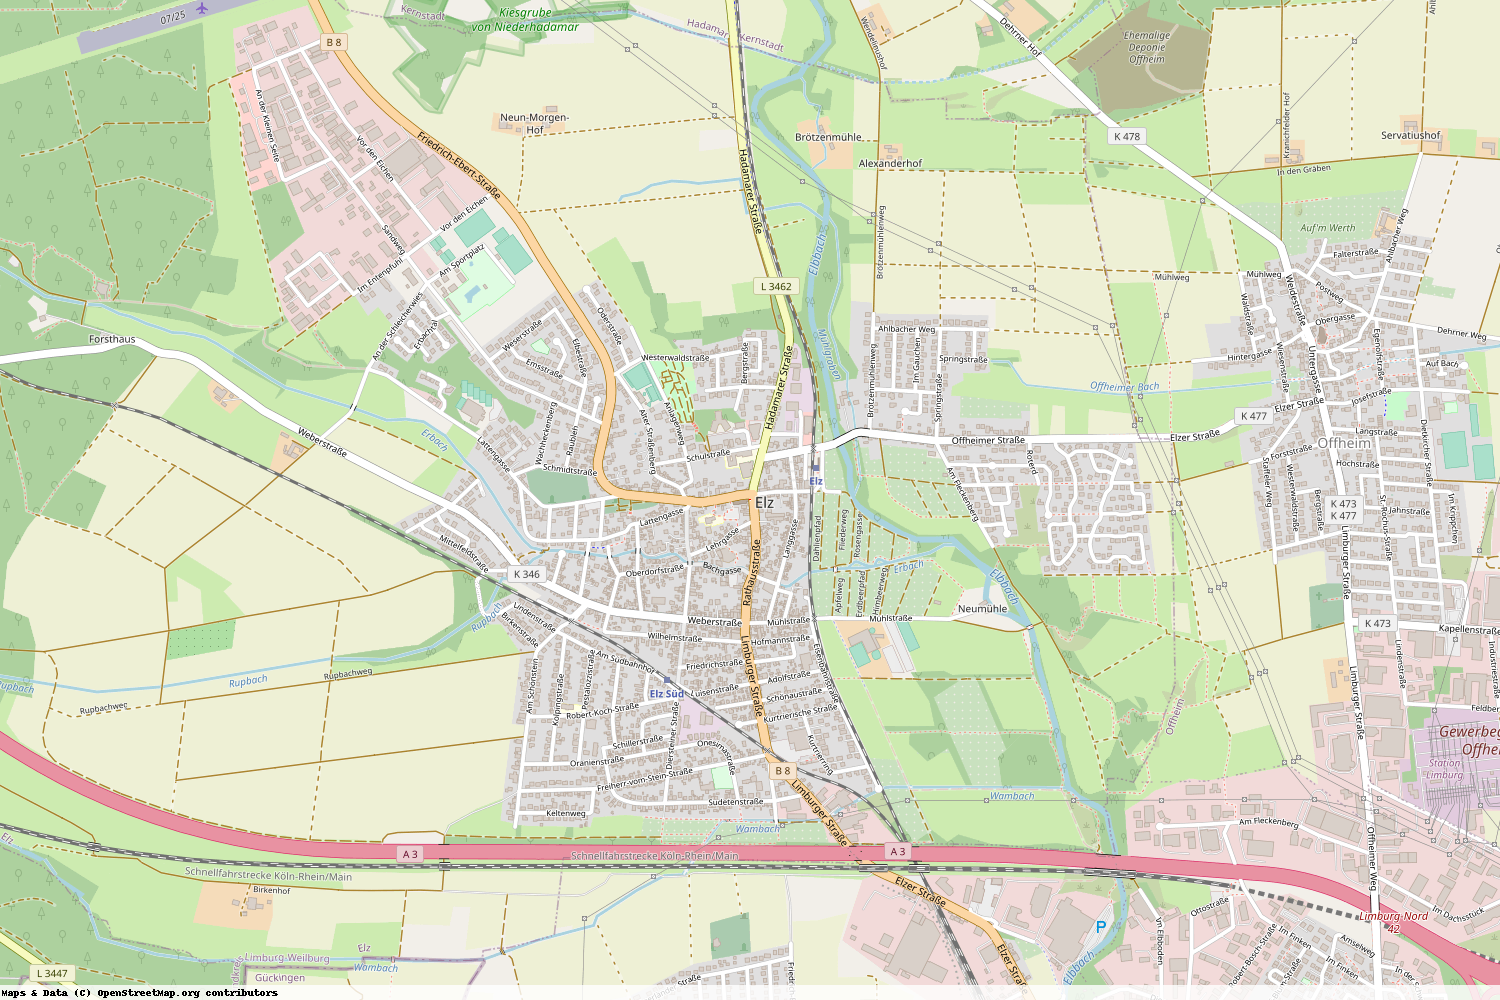 Ist gerade Stromausfall in Hessen - Limburg-Weilburg - Elz?